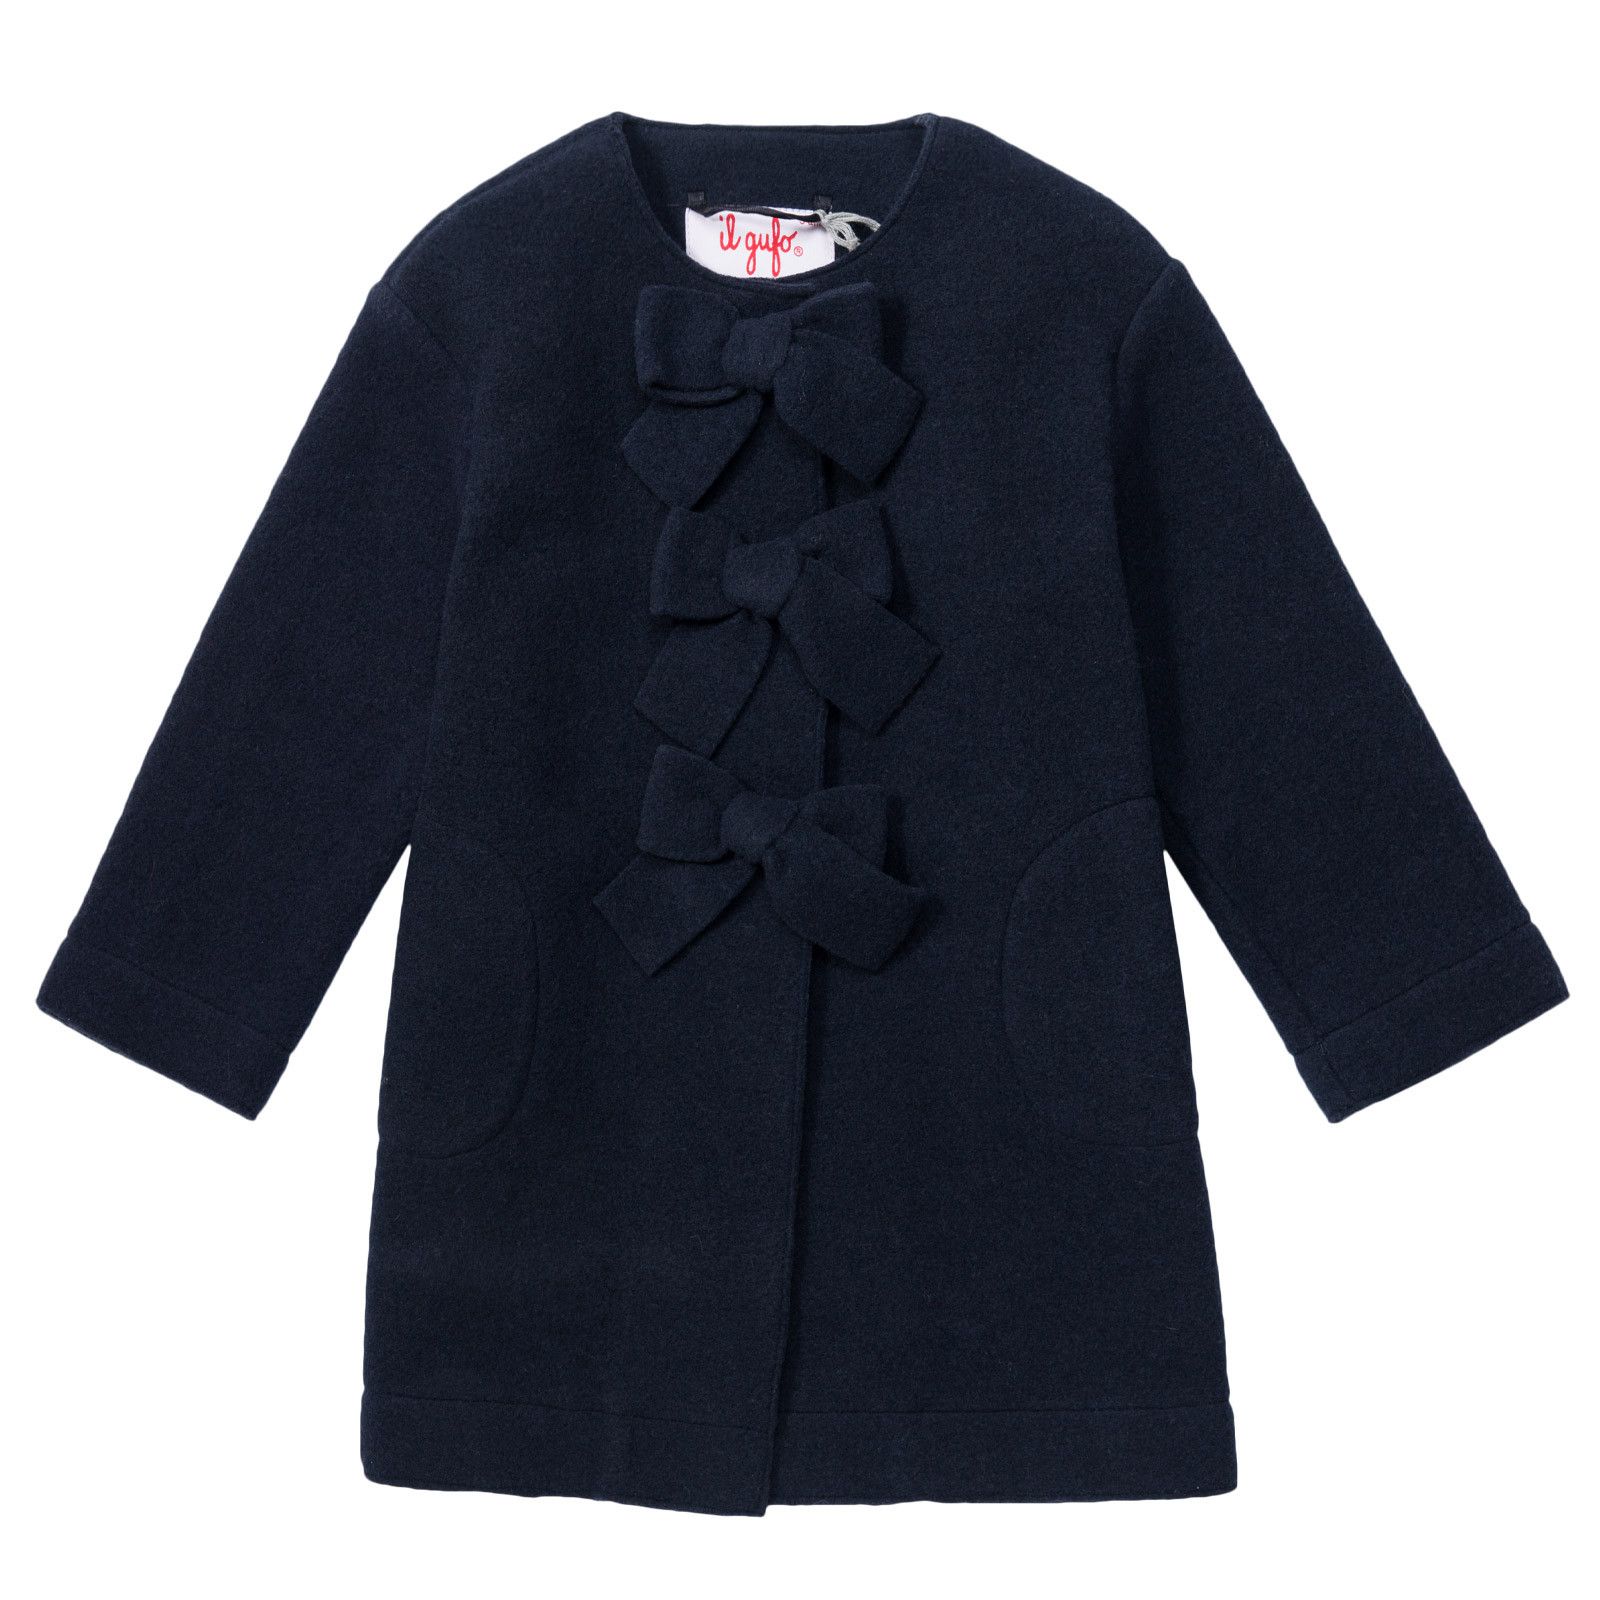 Girls Navy Blue Fancy Bows Trims Coat - CÉMAROSE | Children's Fashion Store - 1